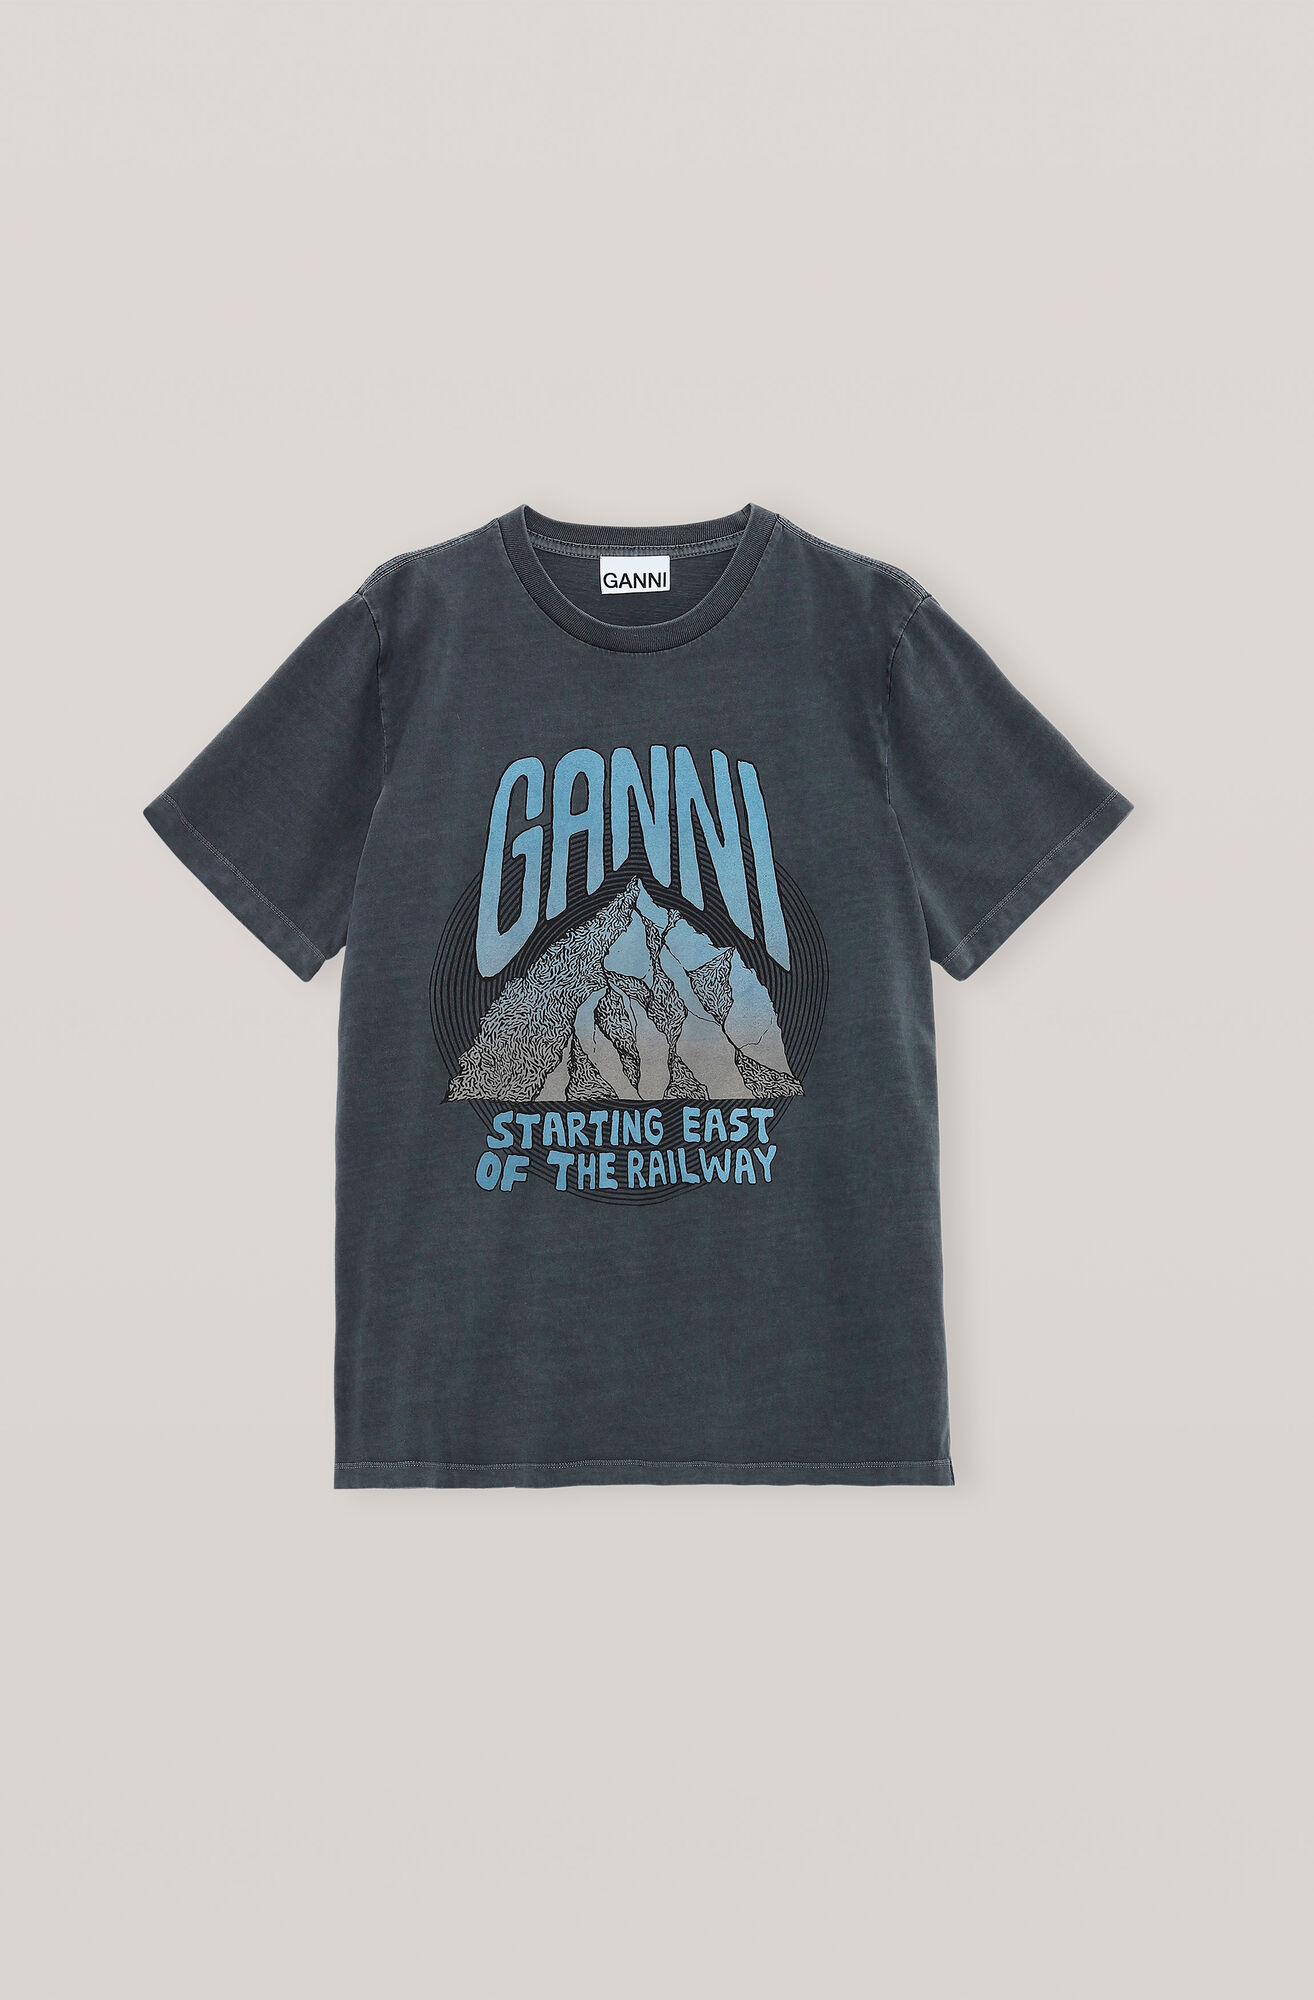 Ganni Us Basic Cotton Jersey T Shirt Mountain 95 00 Usd Shop Your New Basic Cotton Jersey T Shirt Mountain At Ganni Com